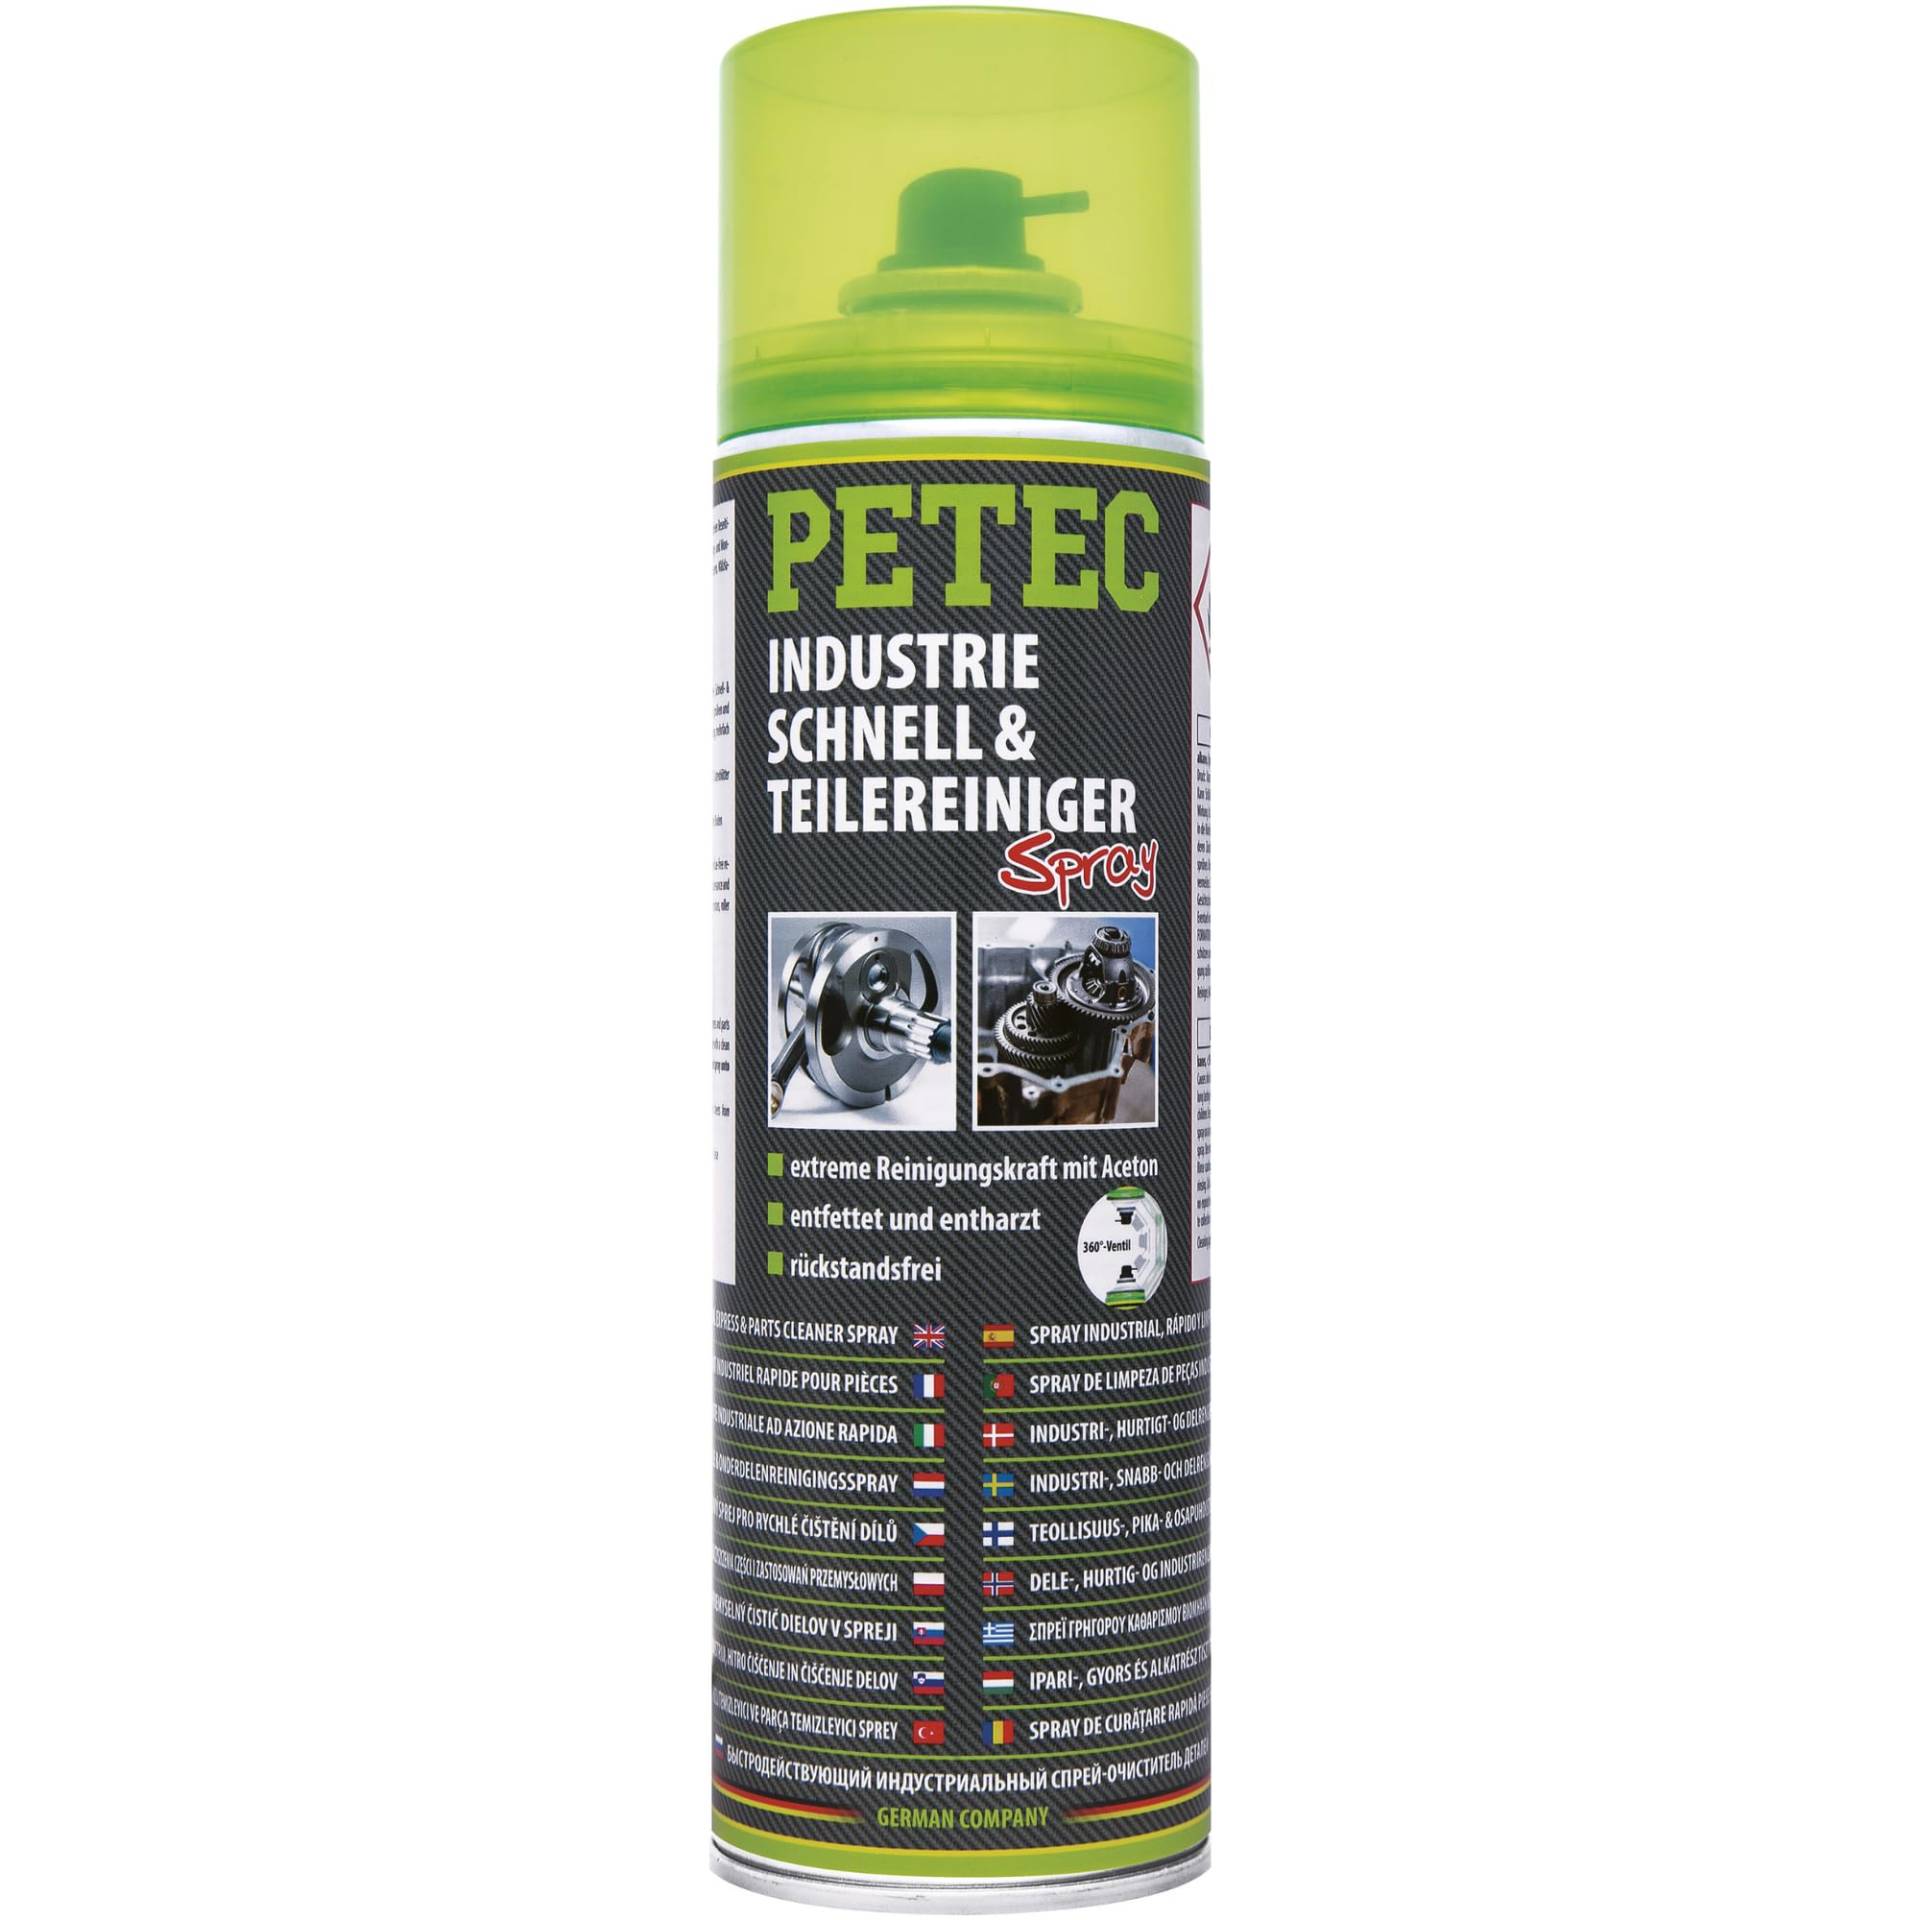 PETEC Industrie-, Schnell- & Teilereiniger Spray, 500 ml 71750 von PETEC